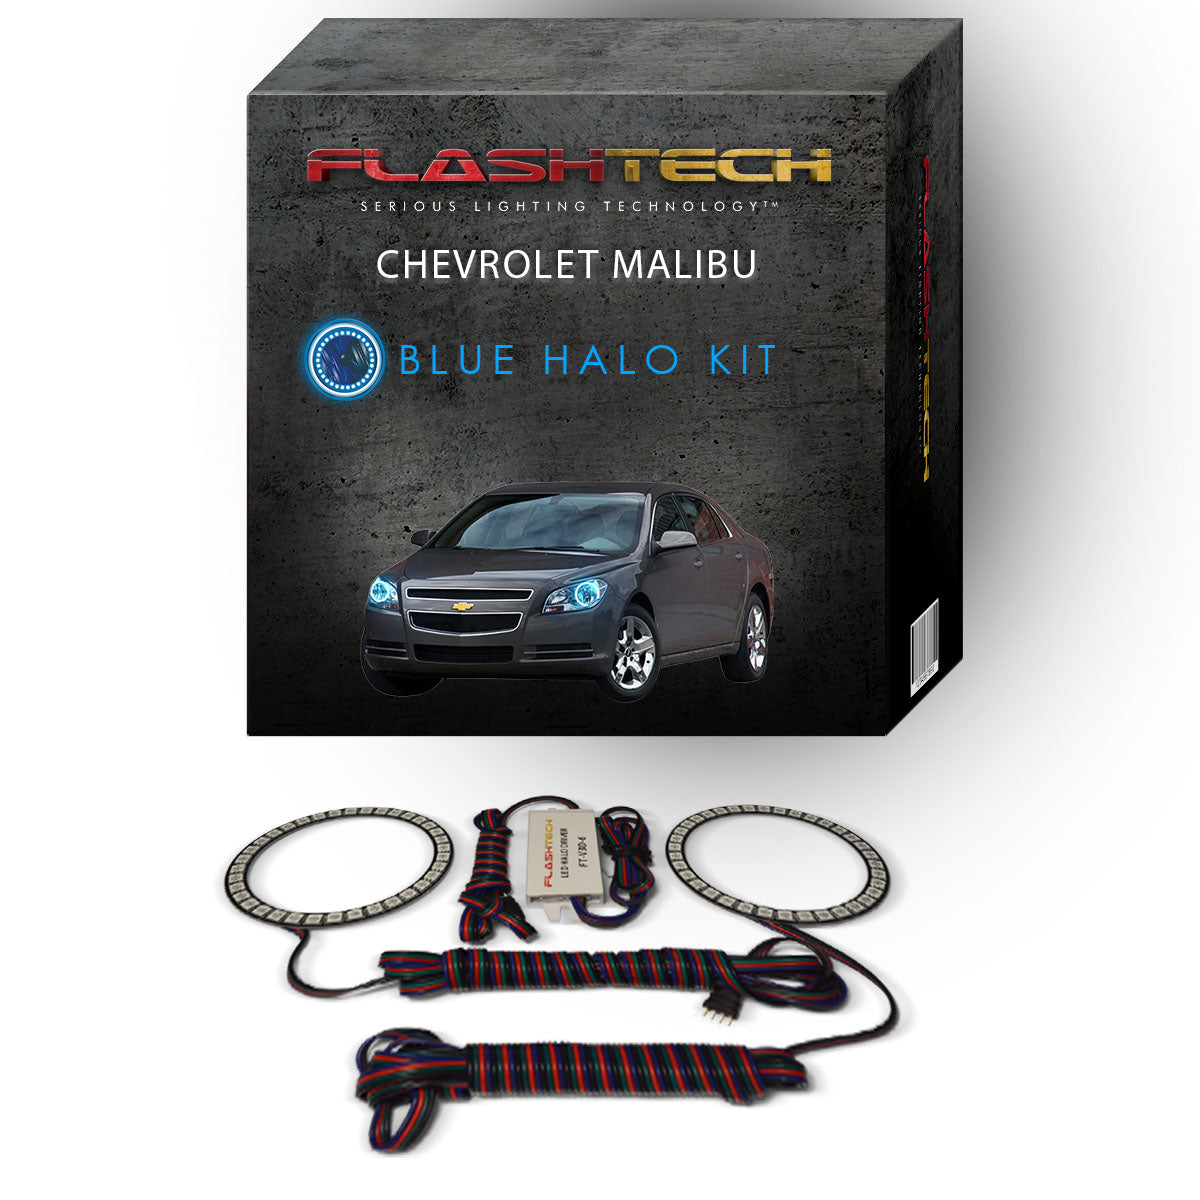 Chevrolet-Malibu-2008, 2009, 2010, 2011, 2012-LED-Halo-Headlights-RGB-No Remote-CY-MB0812-V3H